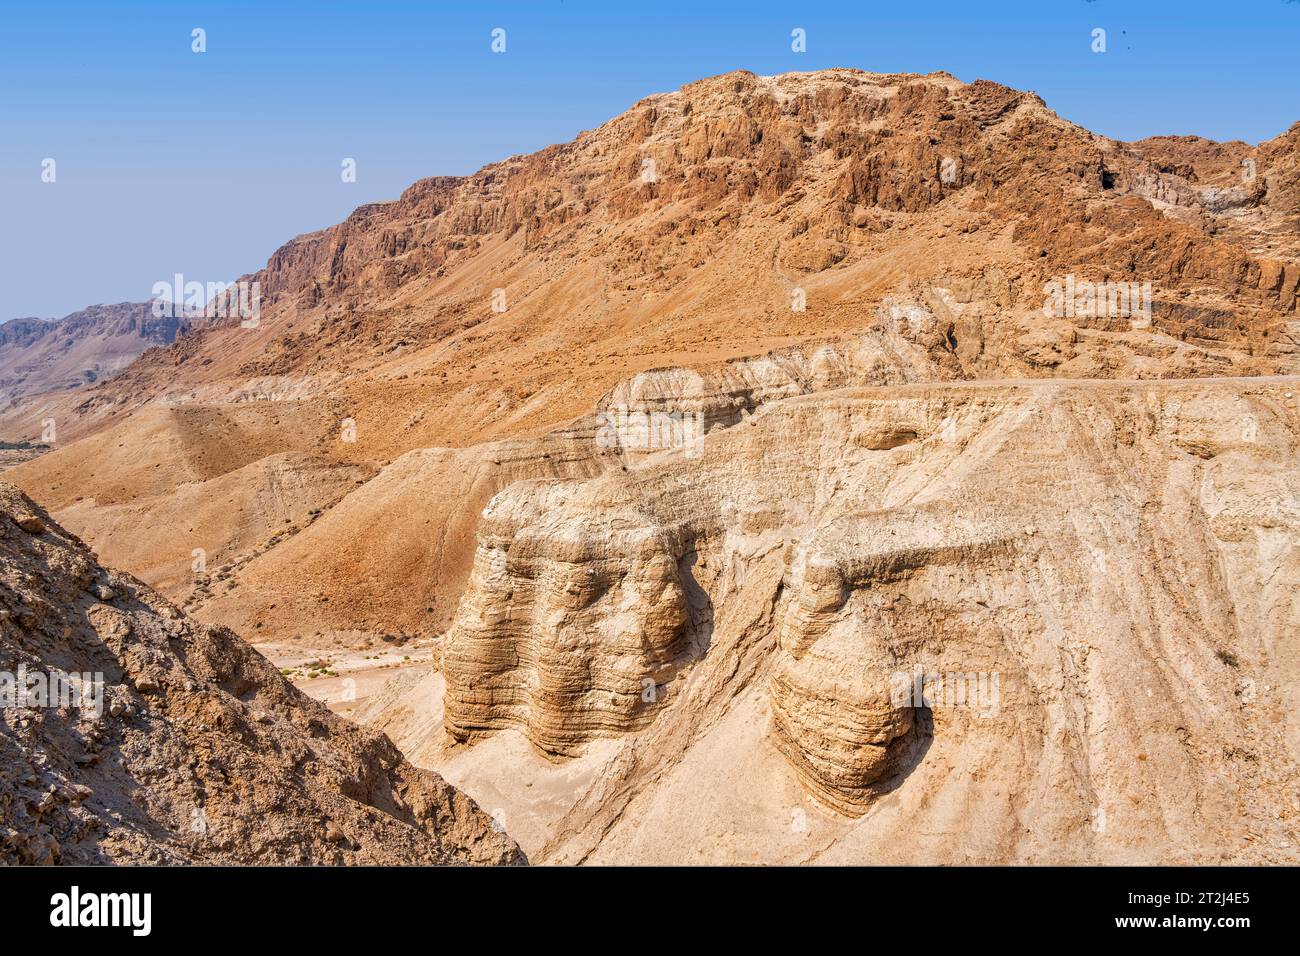 Qumran, Israël - 13 août 2023 : grotte des rouleaux de la mer morte, connue sous le nom de grotte 4, l'une des grottes où des rouleaux de la mer Morte ont été trouvés à Khirbet Qumran dans le Banque D'Images